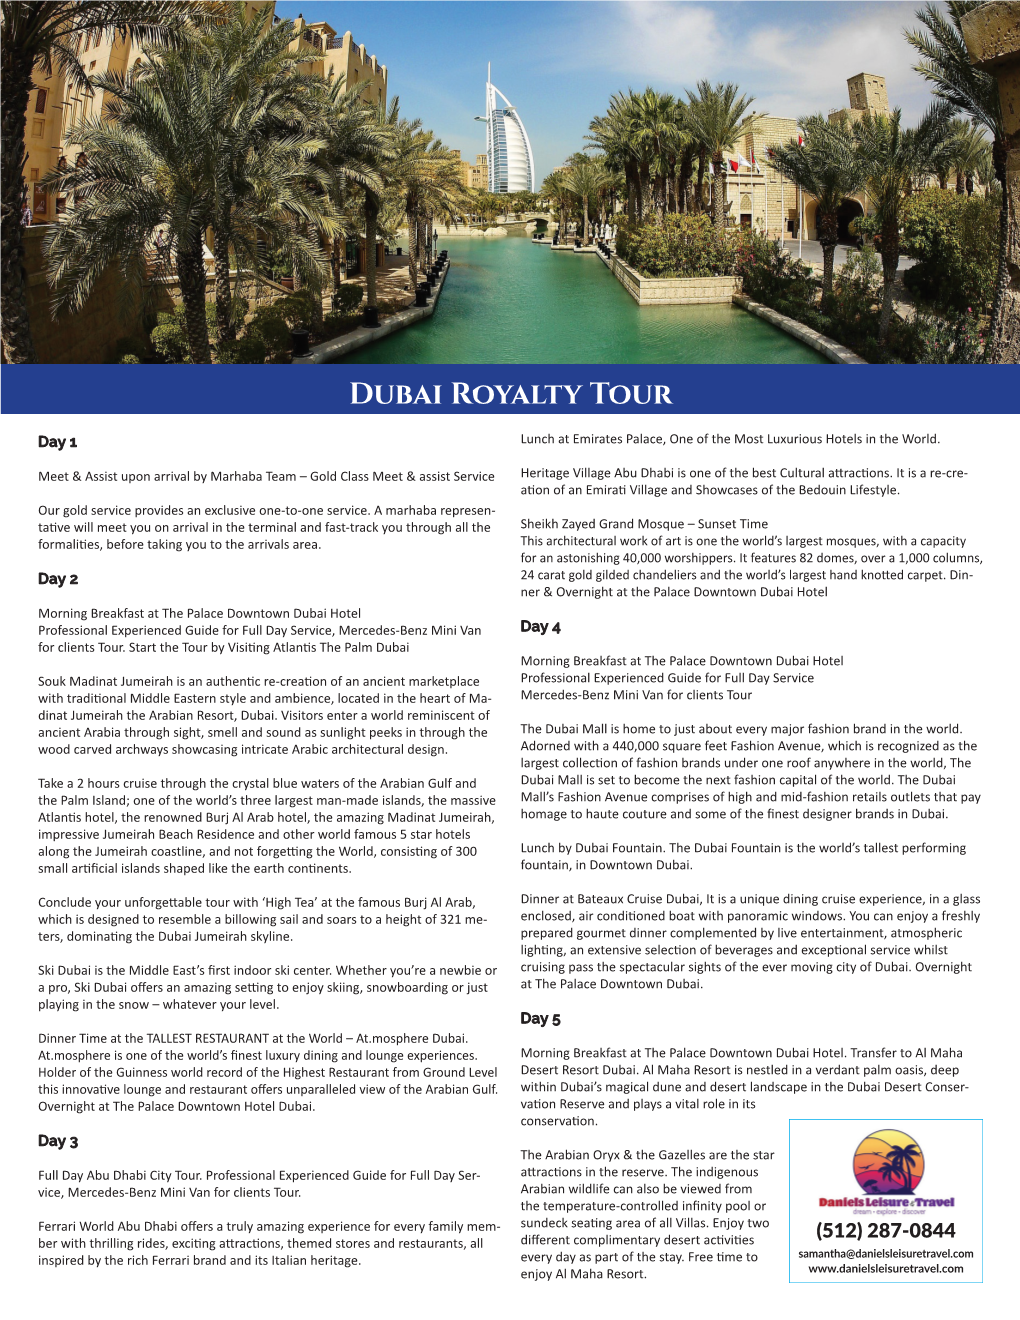 Dubai Royalty Tour